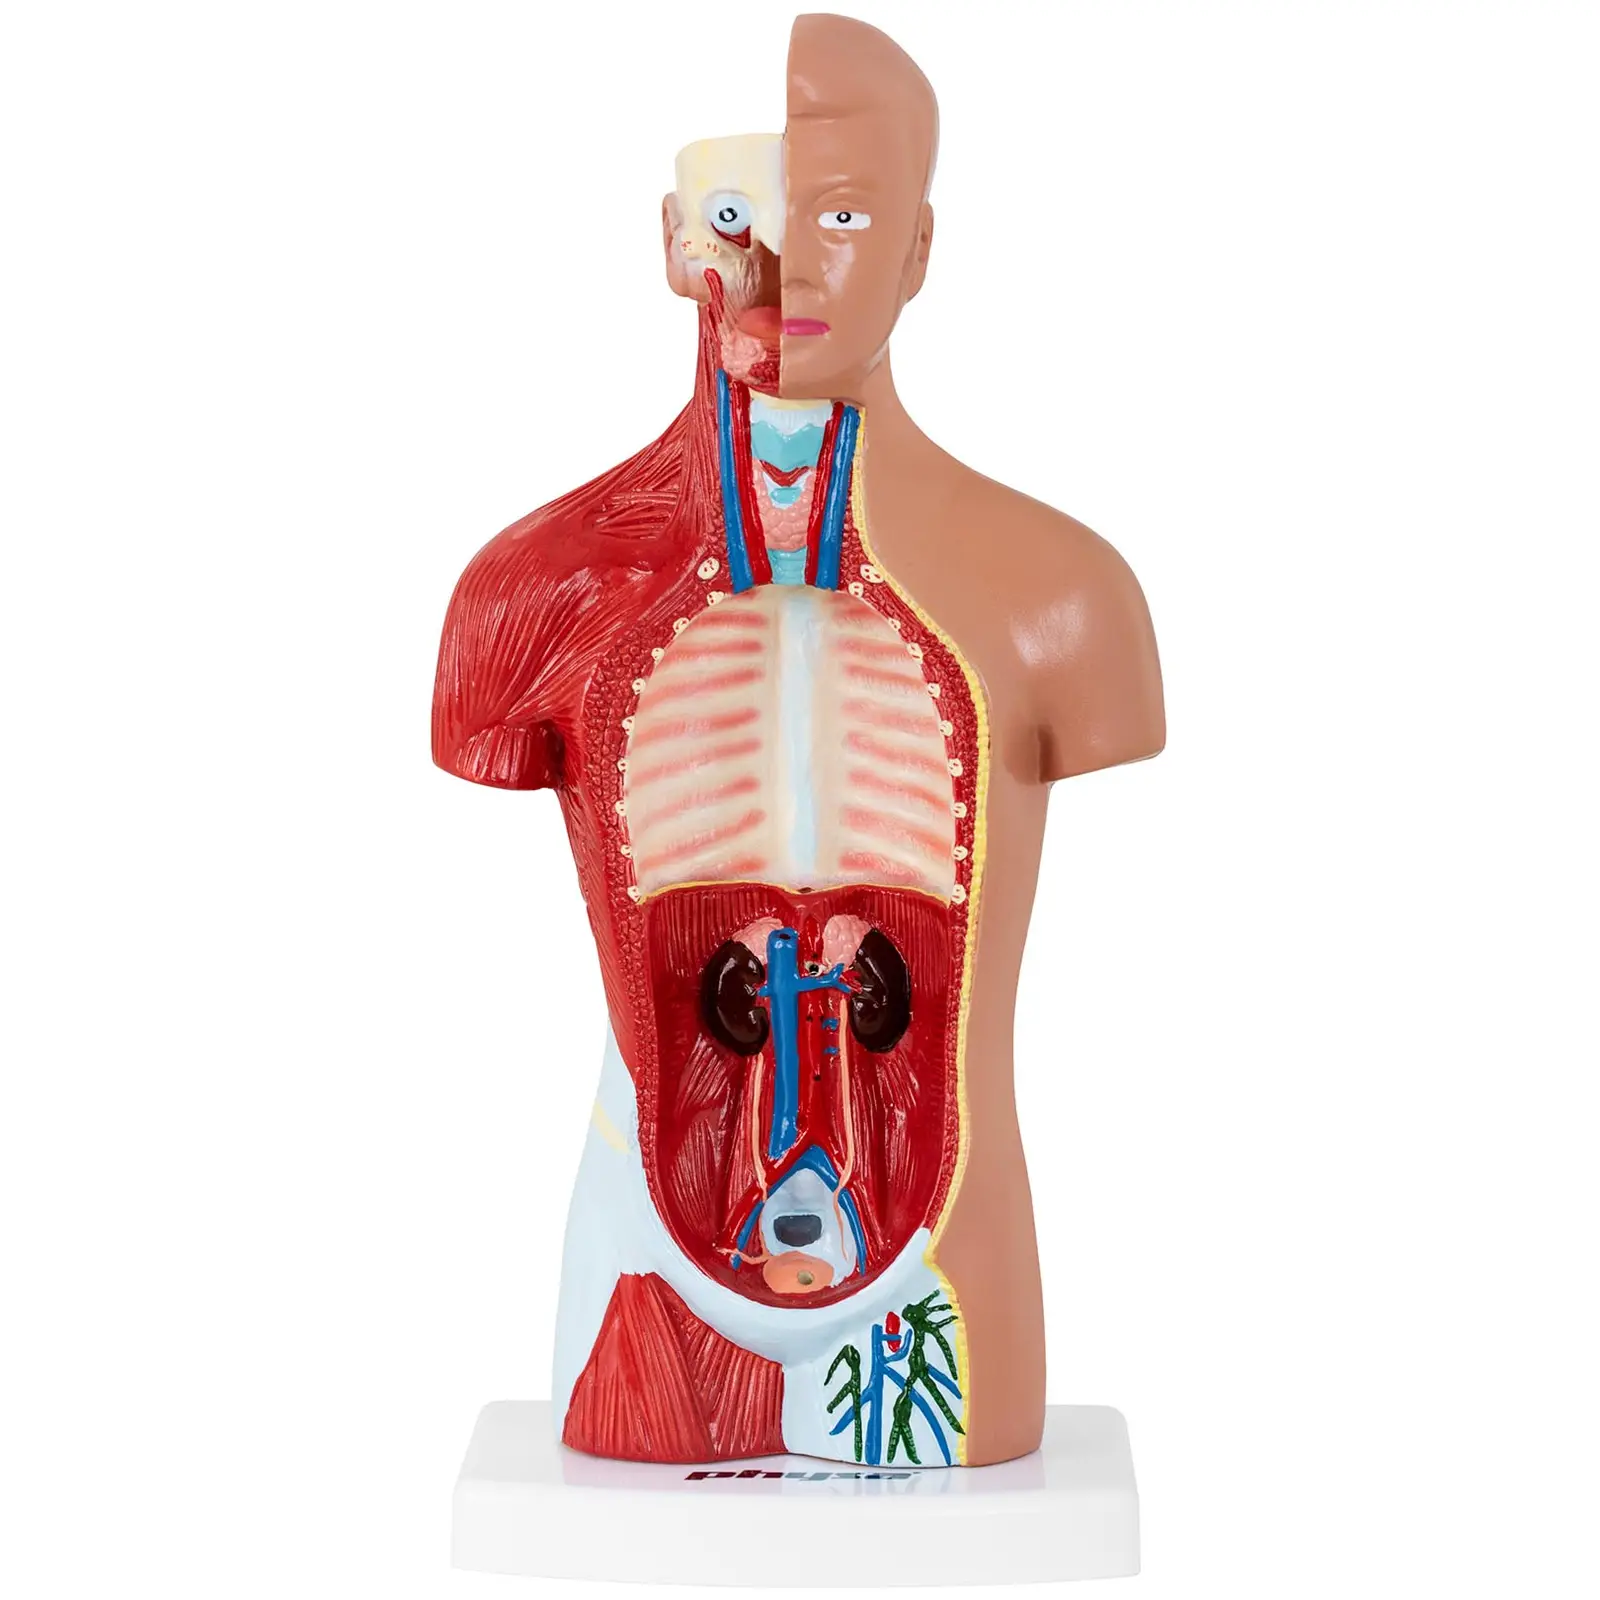 Tułów człowieka - model anatomiczny